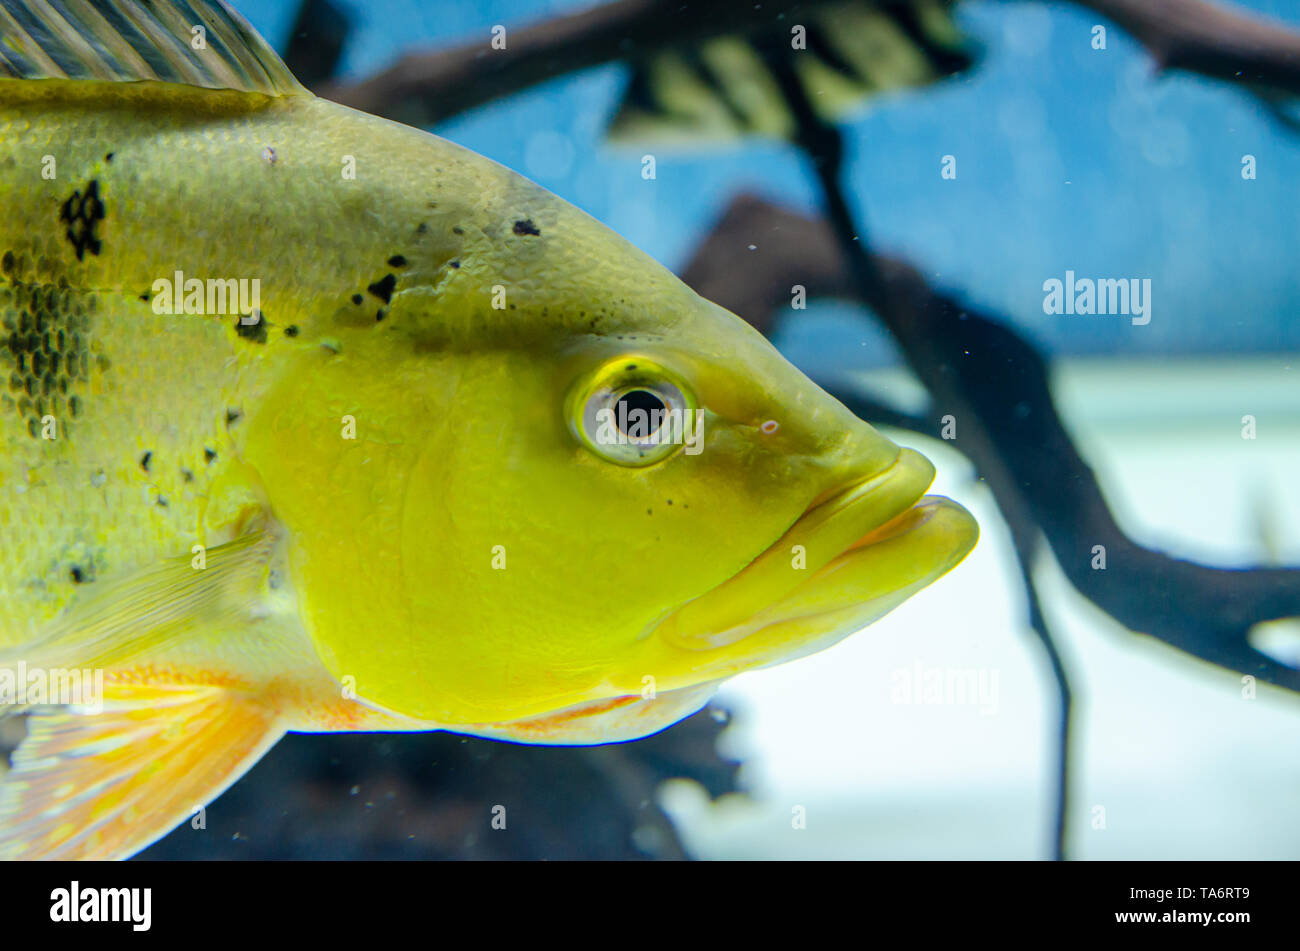 fish cichla kelbri in the aquarium Stock Photo